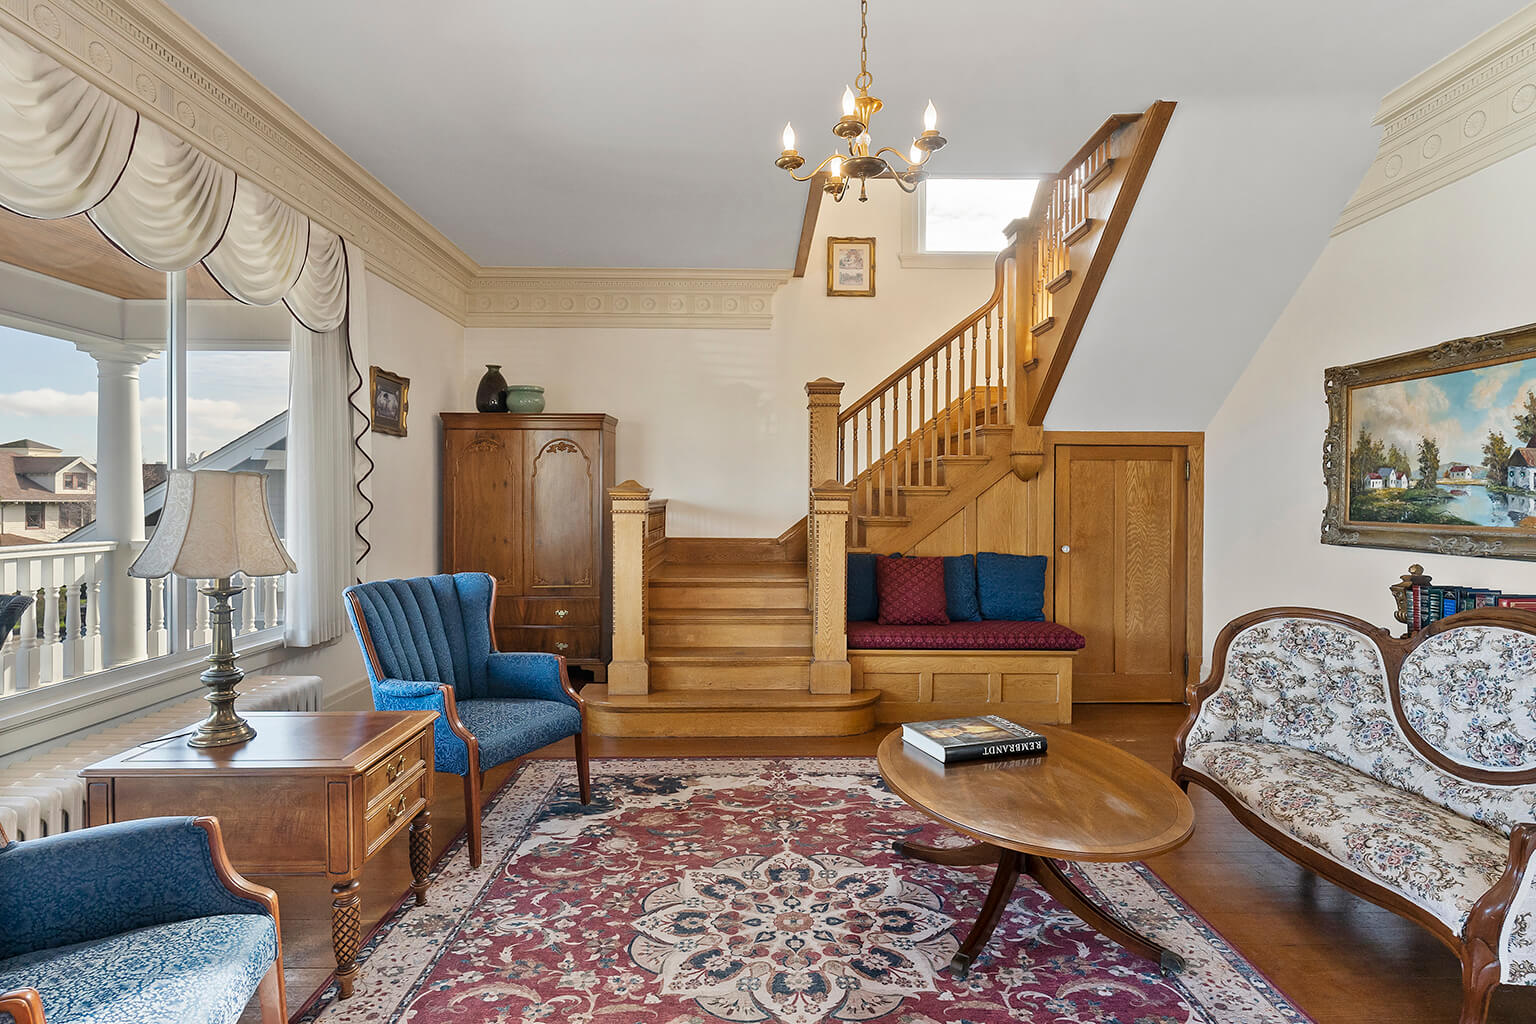 Impressive oak staircase in formal living room